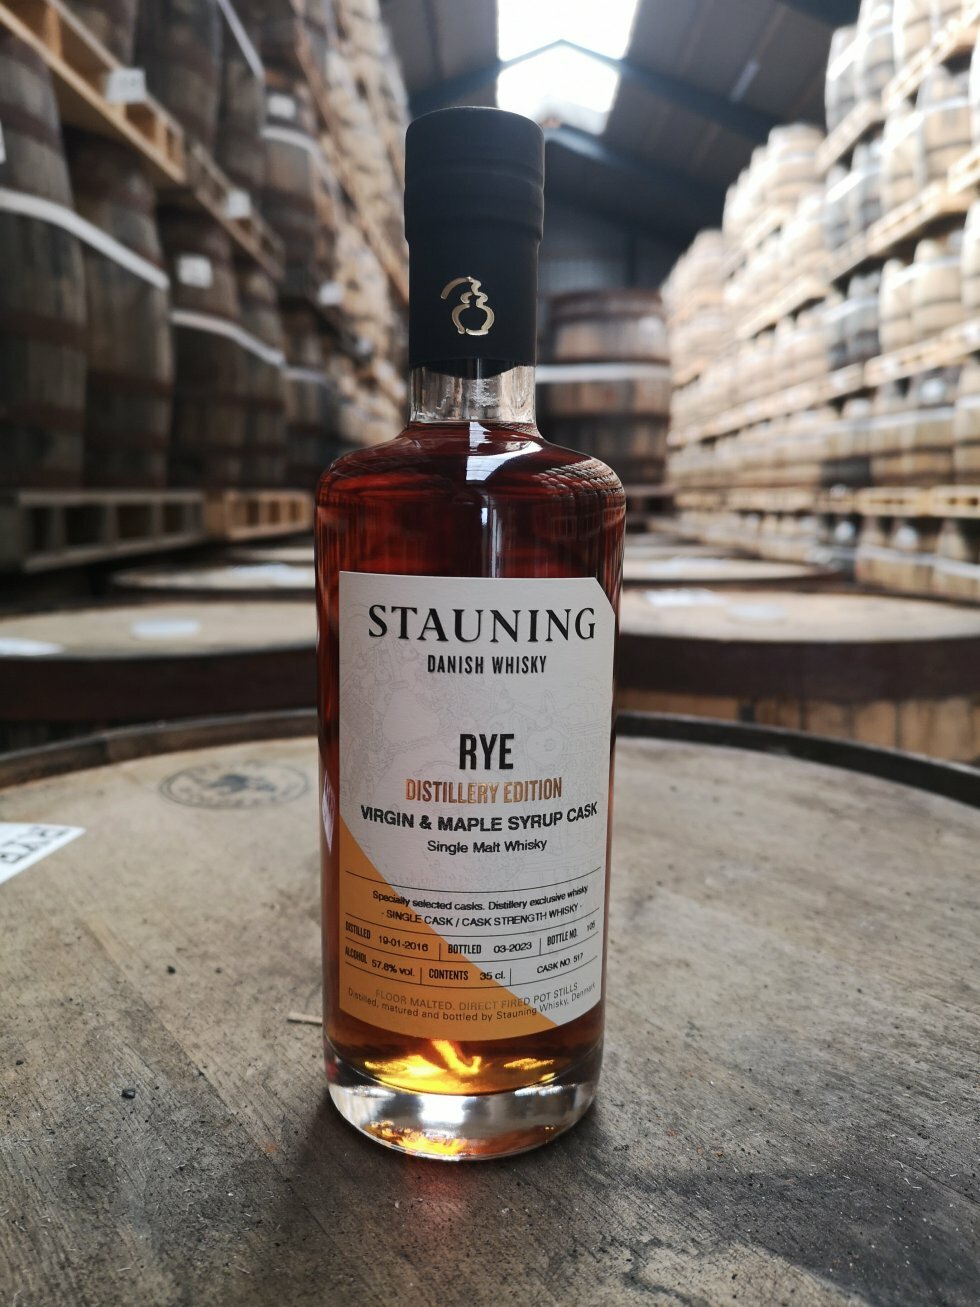 Stauning Whisky er det første danske destilleri til at vinde prestigiøs pris til World Whiskies Awards